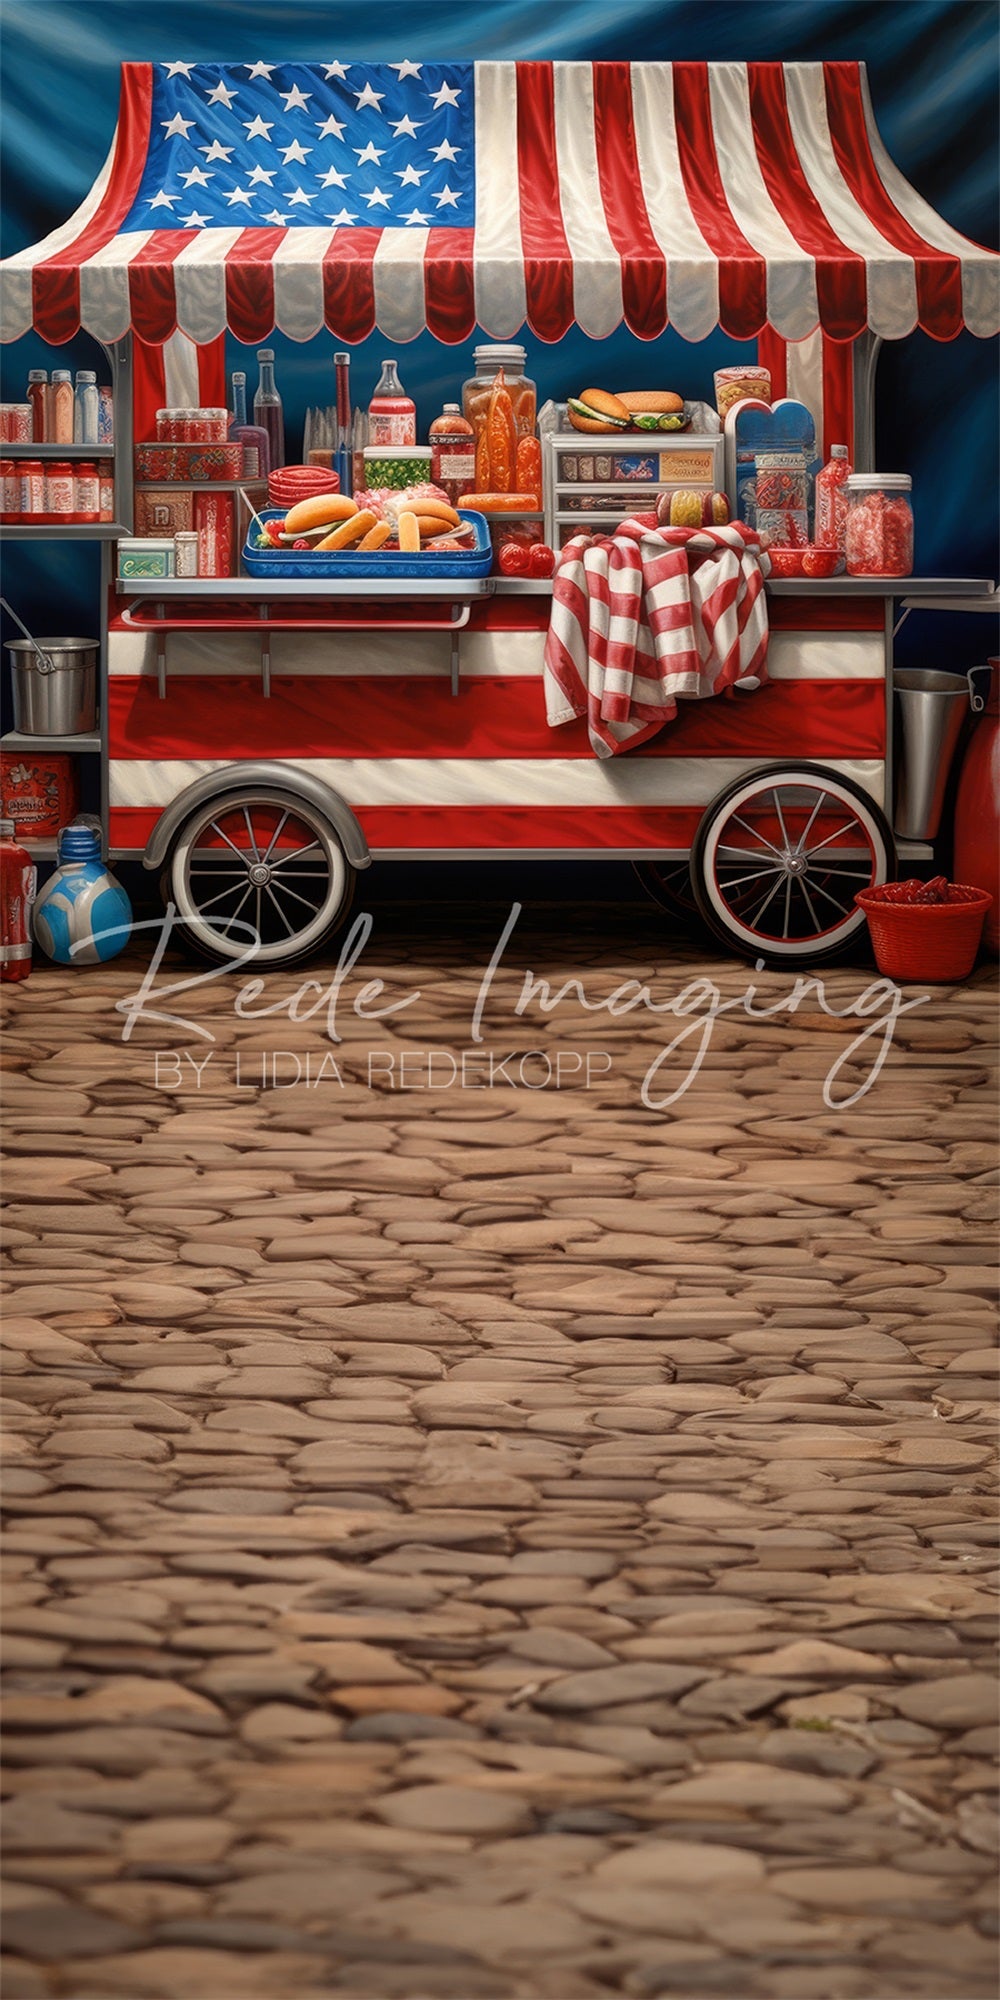 Kate Unabhängigkeitstag Am Hot Dog Stand Sweep-Hintergrund für Fotografie von Lidia Redekopp